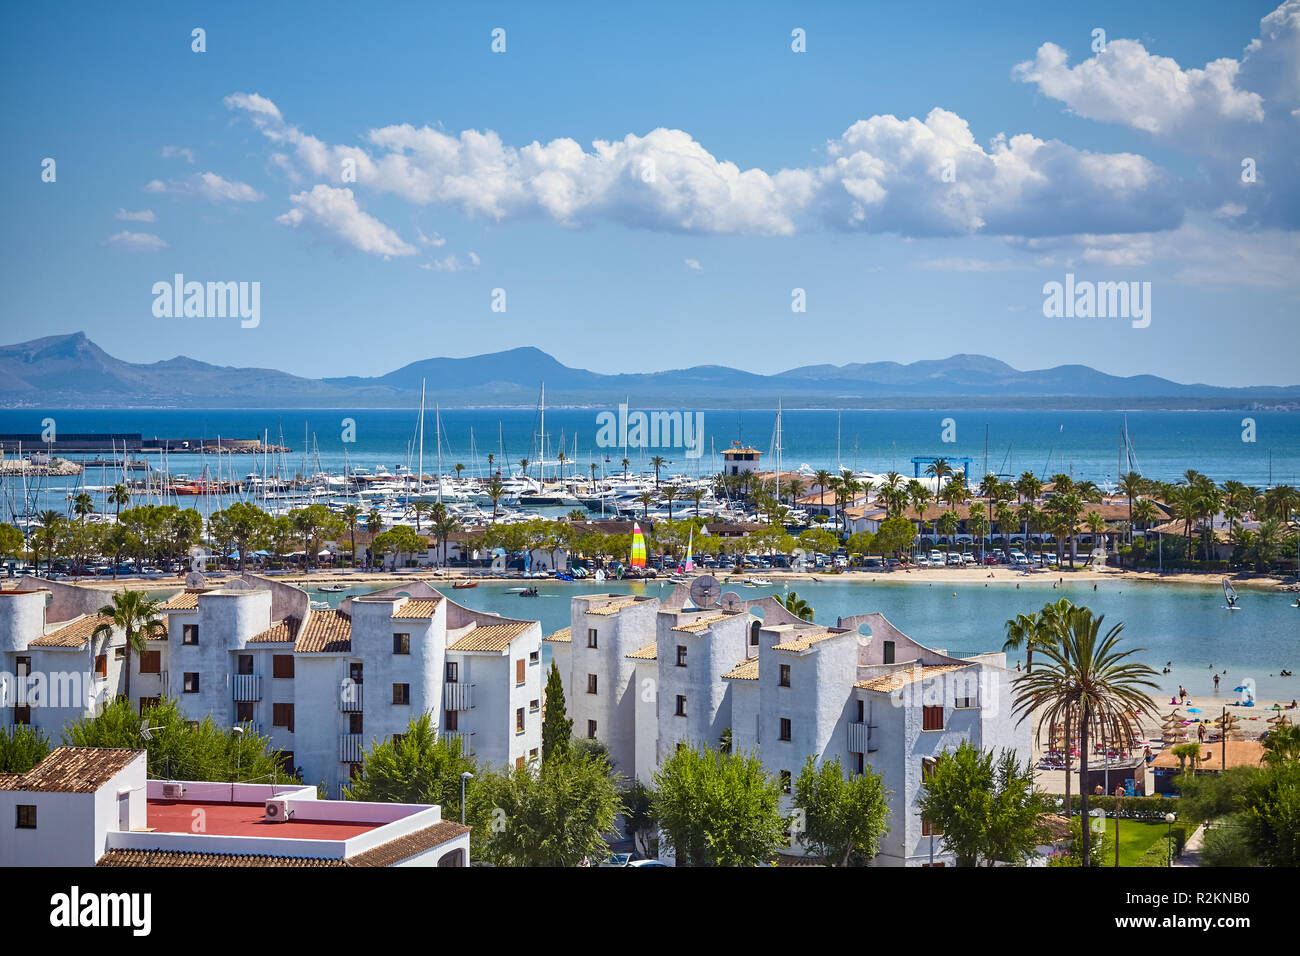 Allgemeine Ansicht des Hafens von Alcudia, Mallorca ruhig touristische Stadt, Spanien. Stockfoto